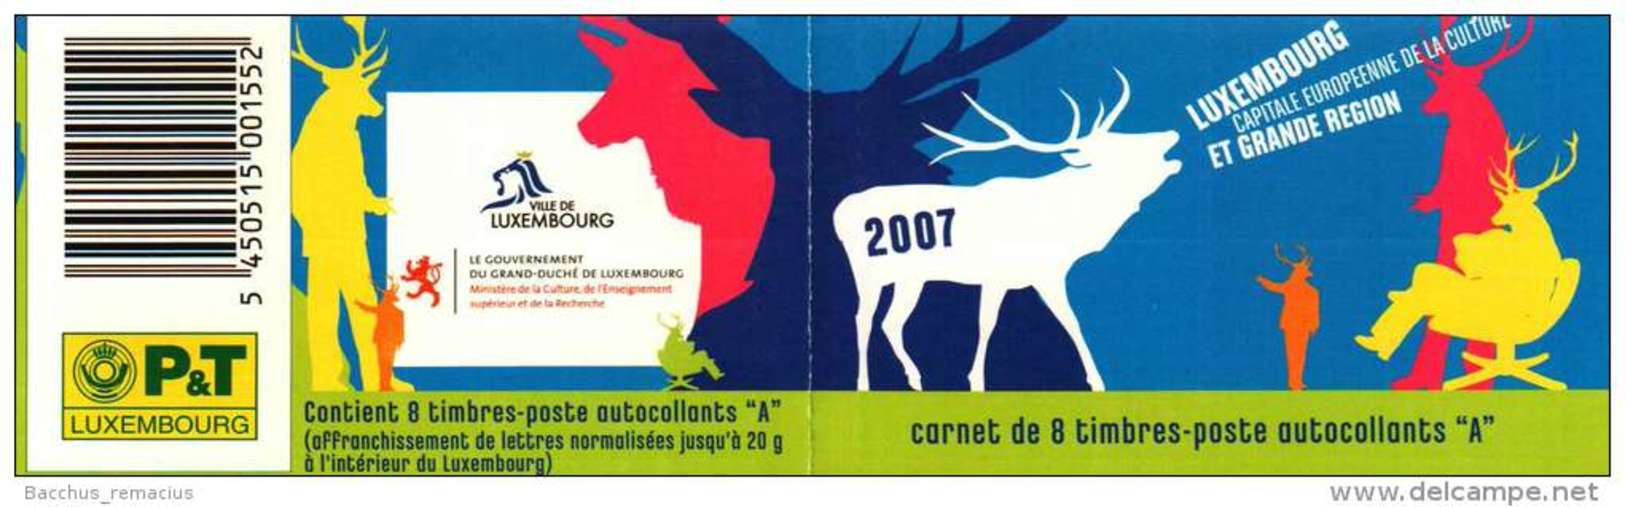 Luxembourg Et Grande Région  Carnet De 8 Timbres "A"  Autocollants Capitale Européenne De La Culture 2007 - Booklets